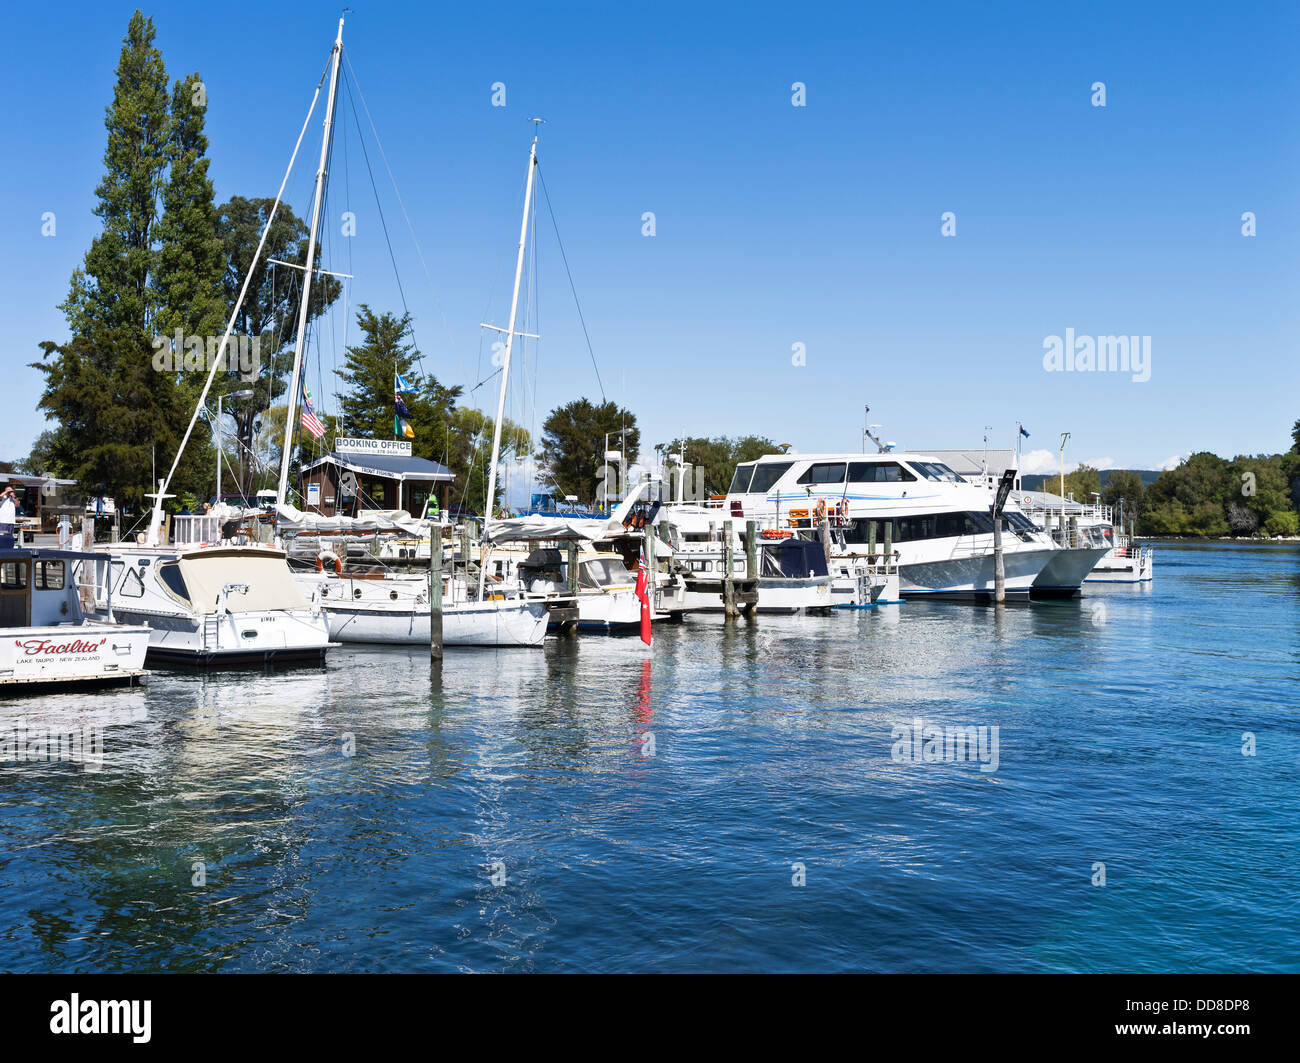 dh Waikato River TAUPO NEW ZEALAND Lake Taupo marina jetties yachts cruiser motor boats boat Stock Photo